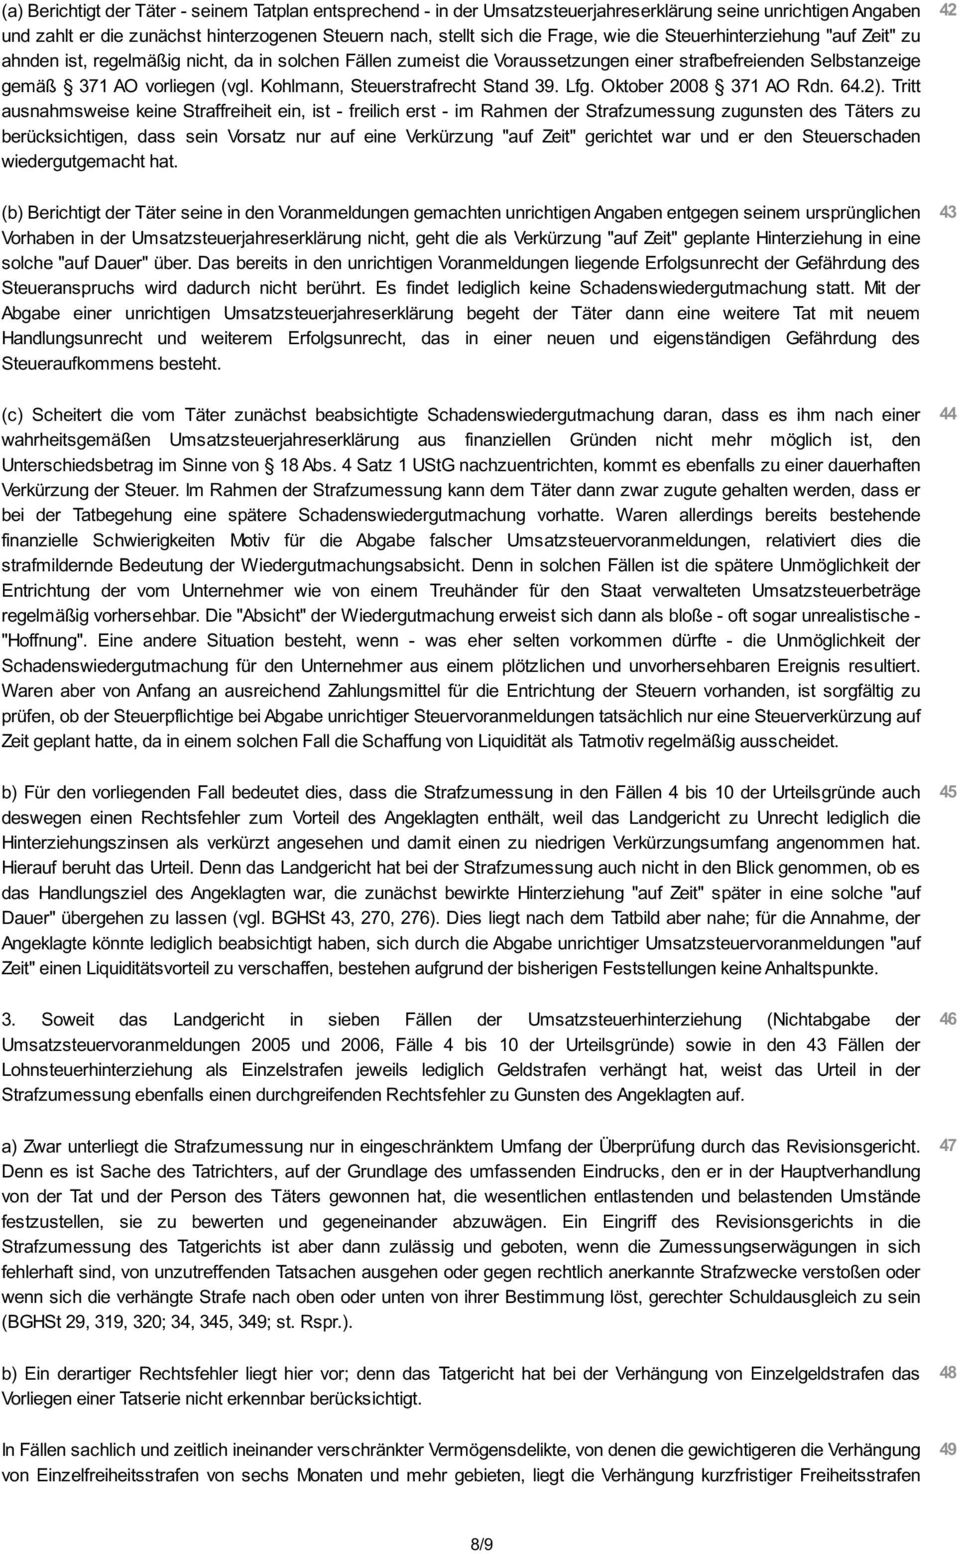 Kohlmann, Steuerstrafrecht Stand 39. Lfg. Oktober 2008 371 AO Rdn. 64.2).